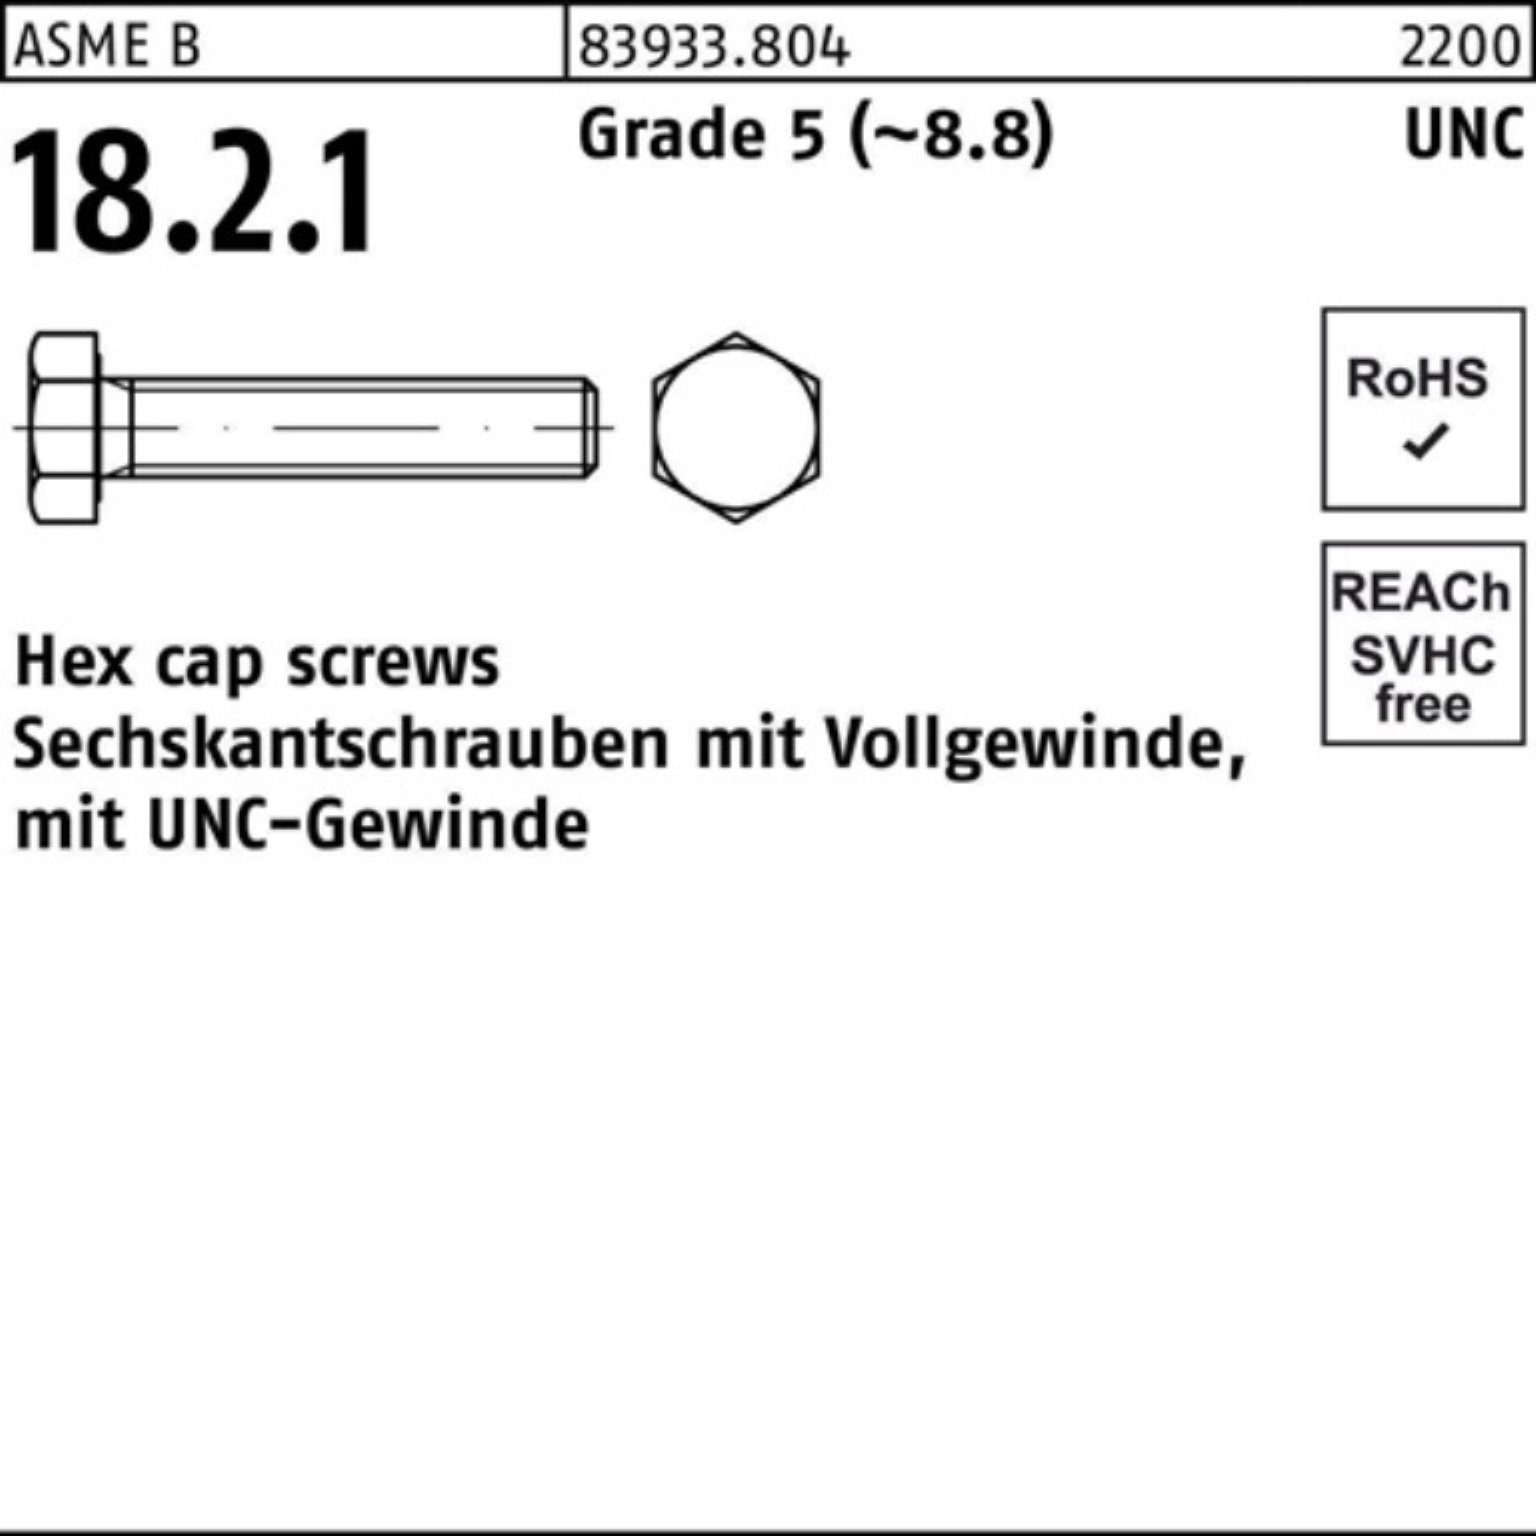 Reyher Sechskantschraube 100er Pack Sechskantschraube R 83933 UNC-Gewinde VG 1/4x 7/8 Grade 5